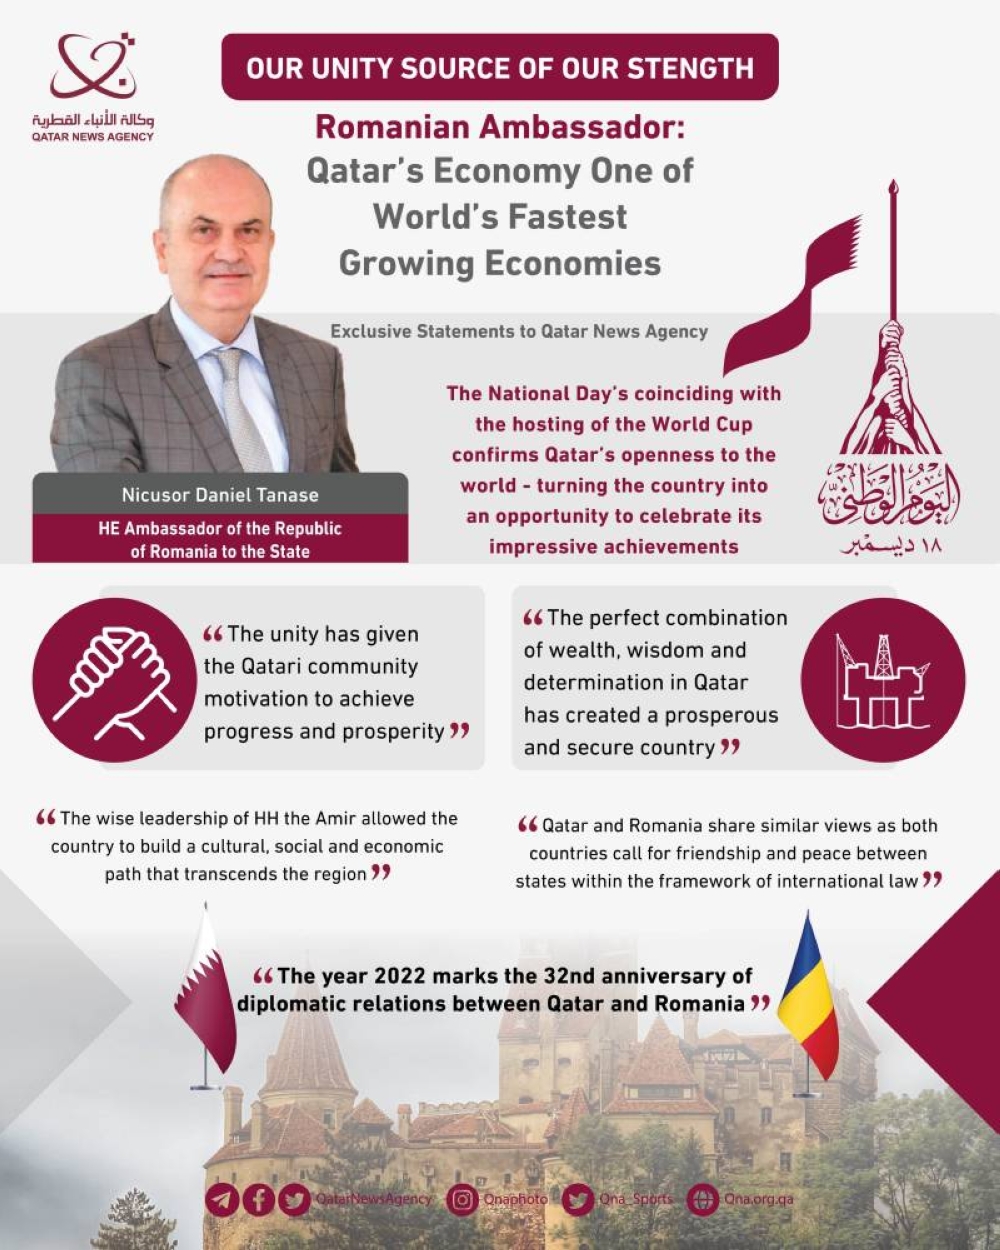 Ambasadorul României: Transformarea recentă la care a fost martor statul Qatar a făcut din acesta una dintre economiile cu cea mai rapidă creștere din lume